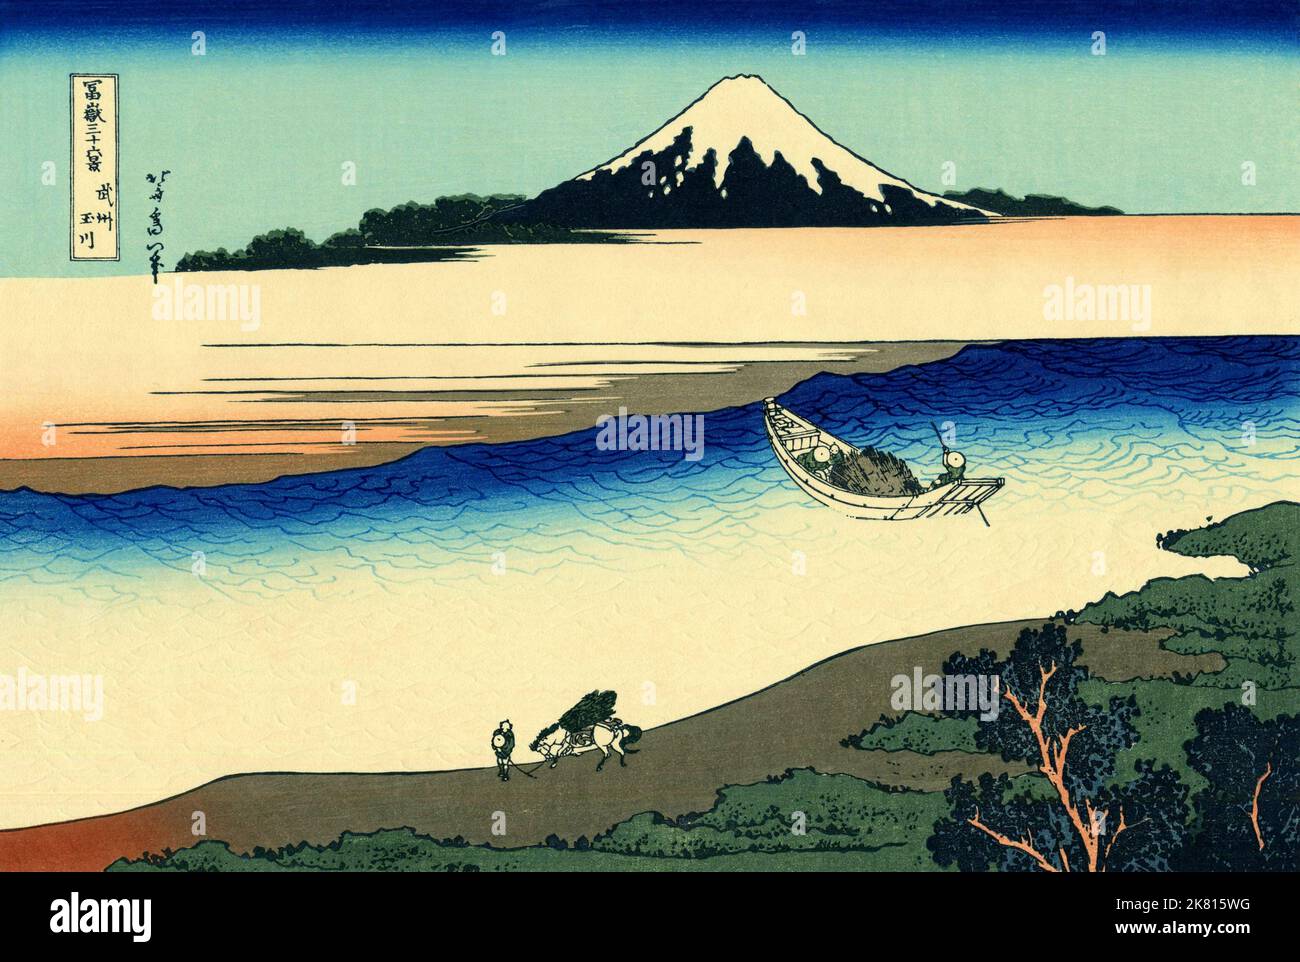 Japón: “Río Tama en la provincia de Musashi”. Impresión en bloque de madera ukiyo-e de la serie «Treinta y seis vistas del monte Fuji» de Katsushika Hokusai (31 de octubre de 1760 - 10 de mayo de 1849), c. 1830. «36 Vistas del Monte Fuji» es una serie «ukiyo-e» de grandes grabados en madera del artista Katsushika Hokusai. La serie muestra el Monte Fuji en diferentes estaciones y condiciones climáticas desde diversos lugares y distancias. En realidad consiste en 46 impresiones creadas entre 1826 y 1833. Los primeros 36 fueron incluidos en la publicación original y, debido a su popularidad, otros 10 fueron añadidos posteriormente. Foto de stock